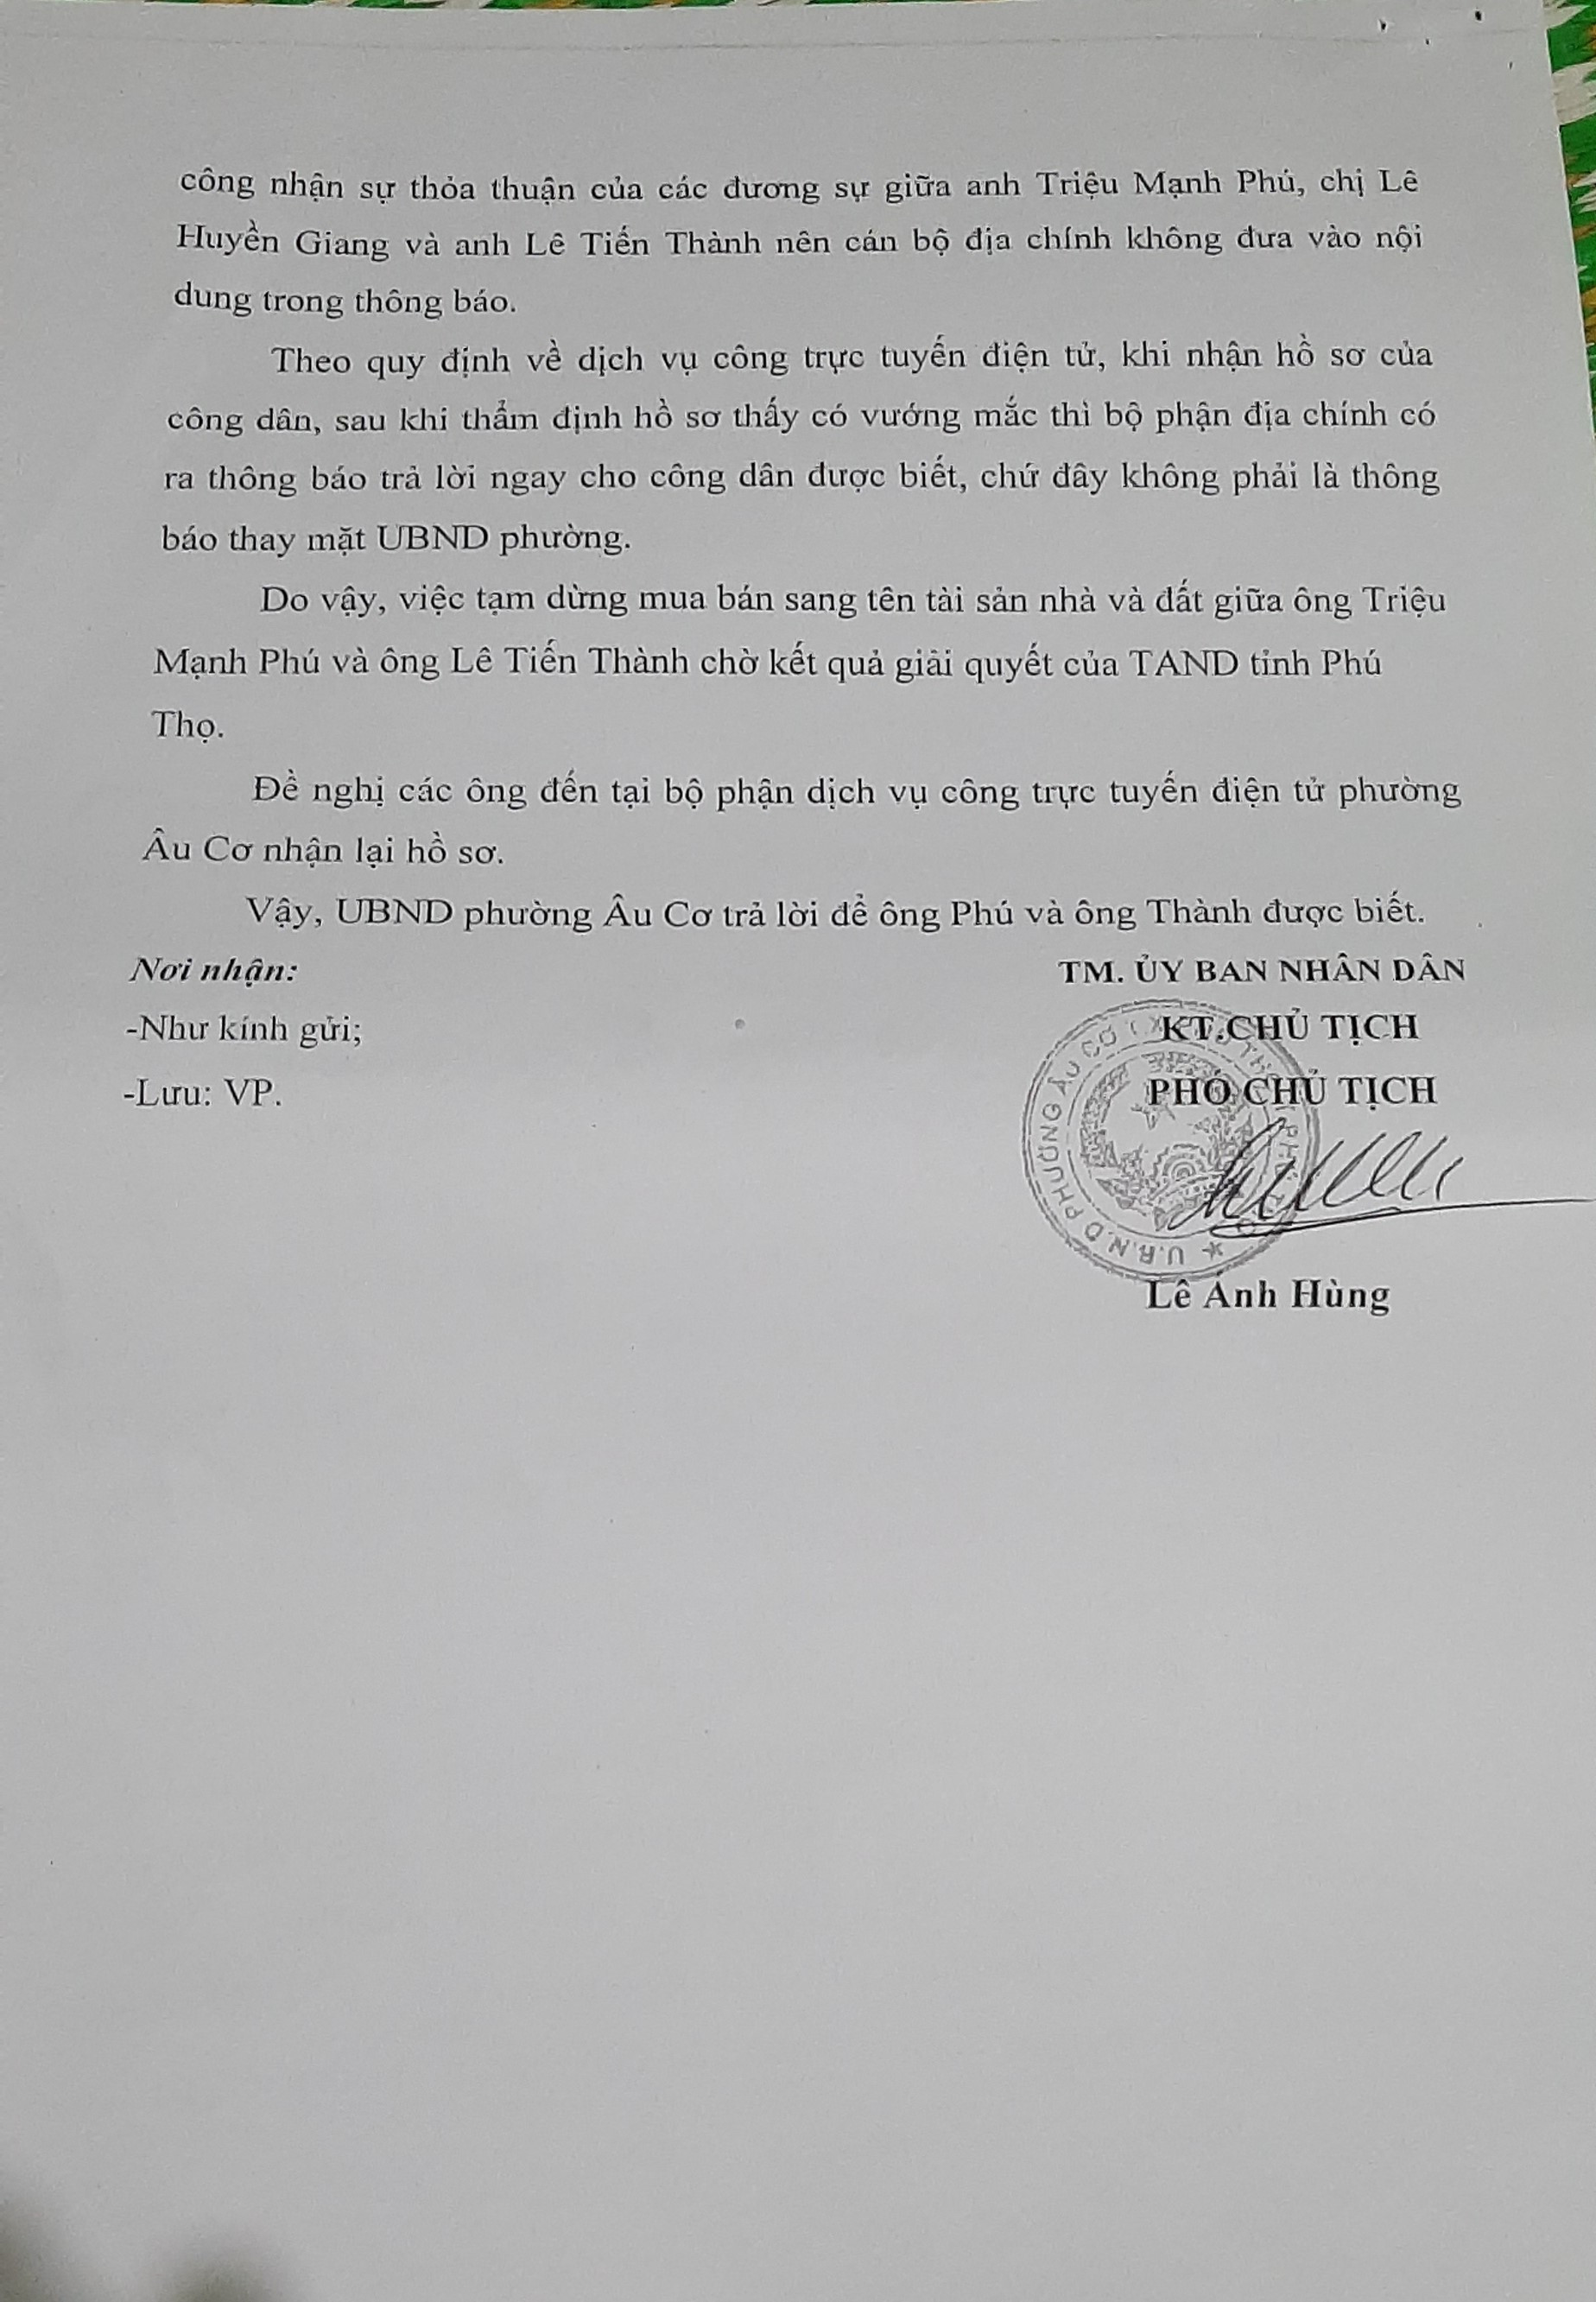 Phú Thọ: Mua nhà đất hợp pháp nhưng bị từ chối khi làm thủ tục sang tên sổ đỏ